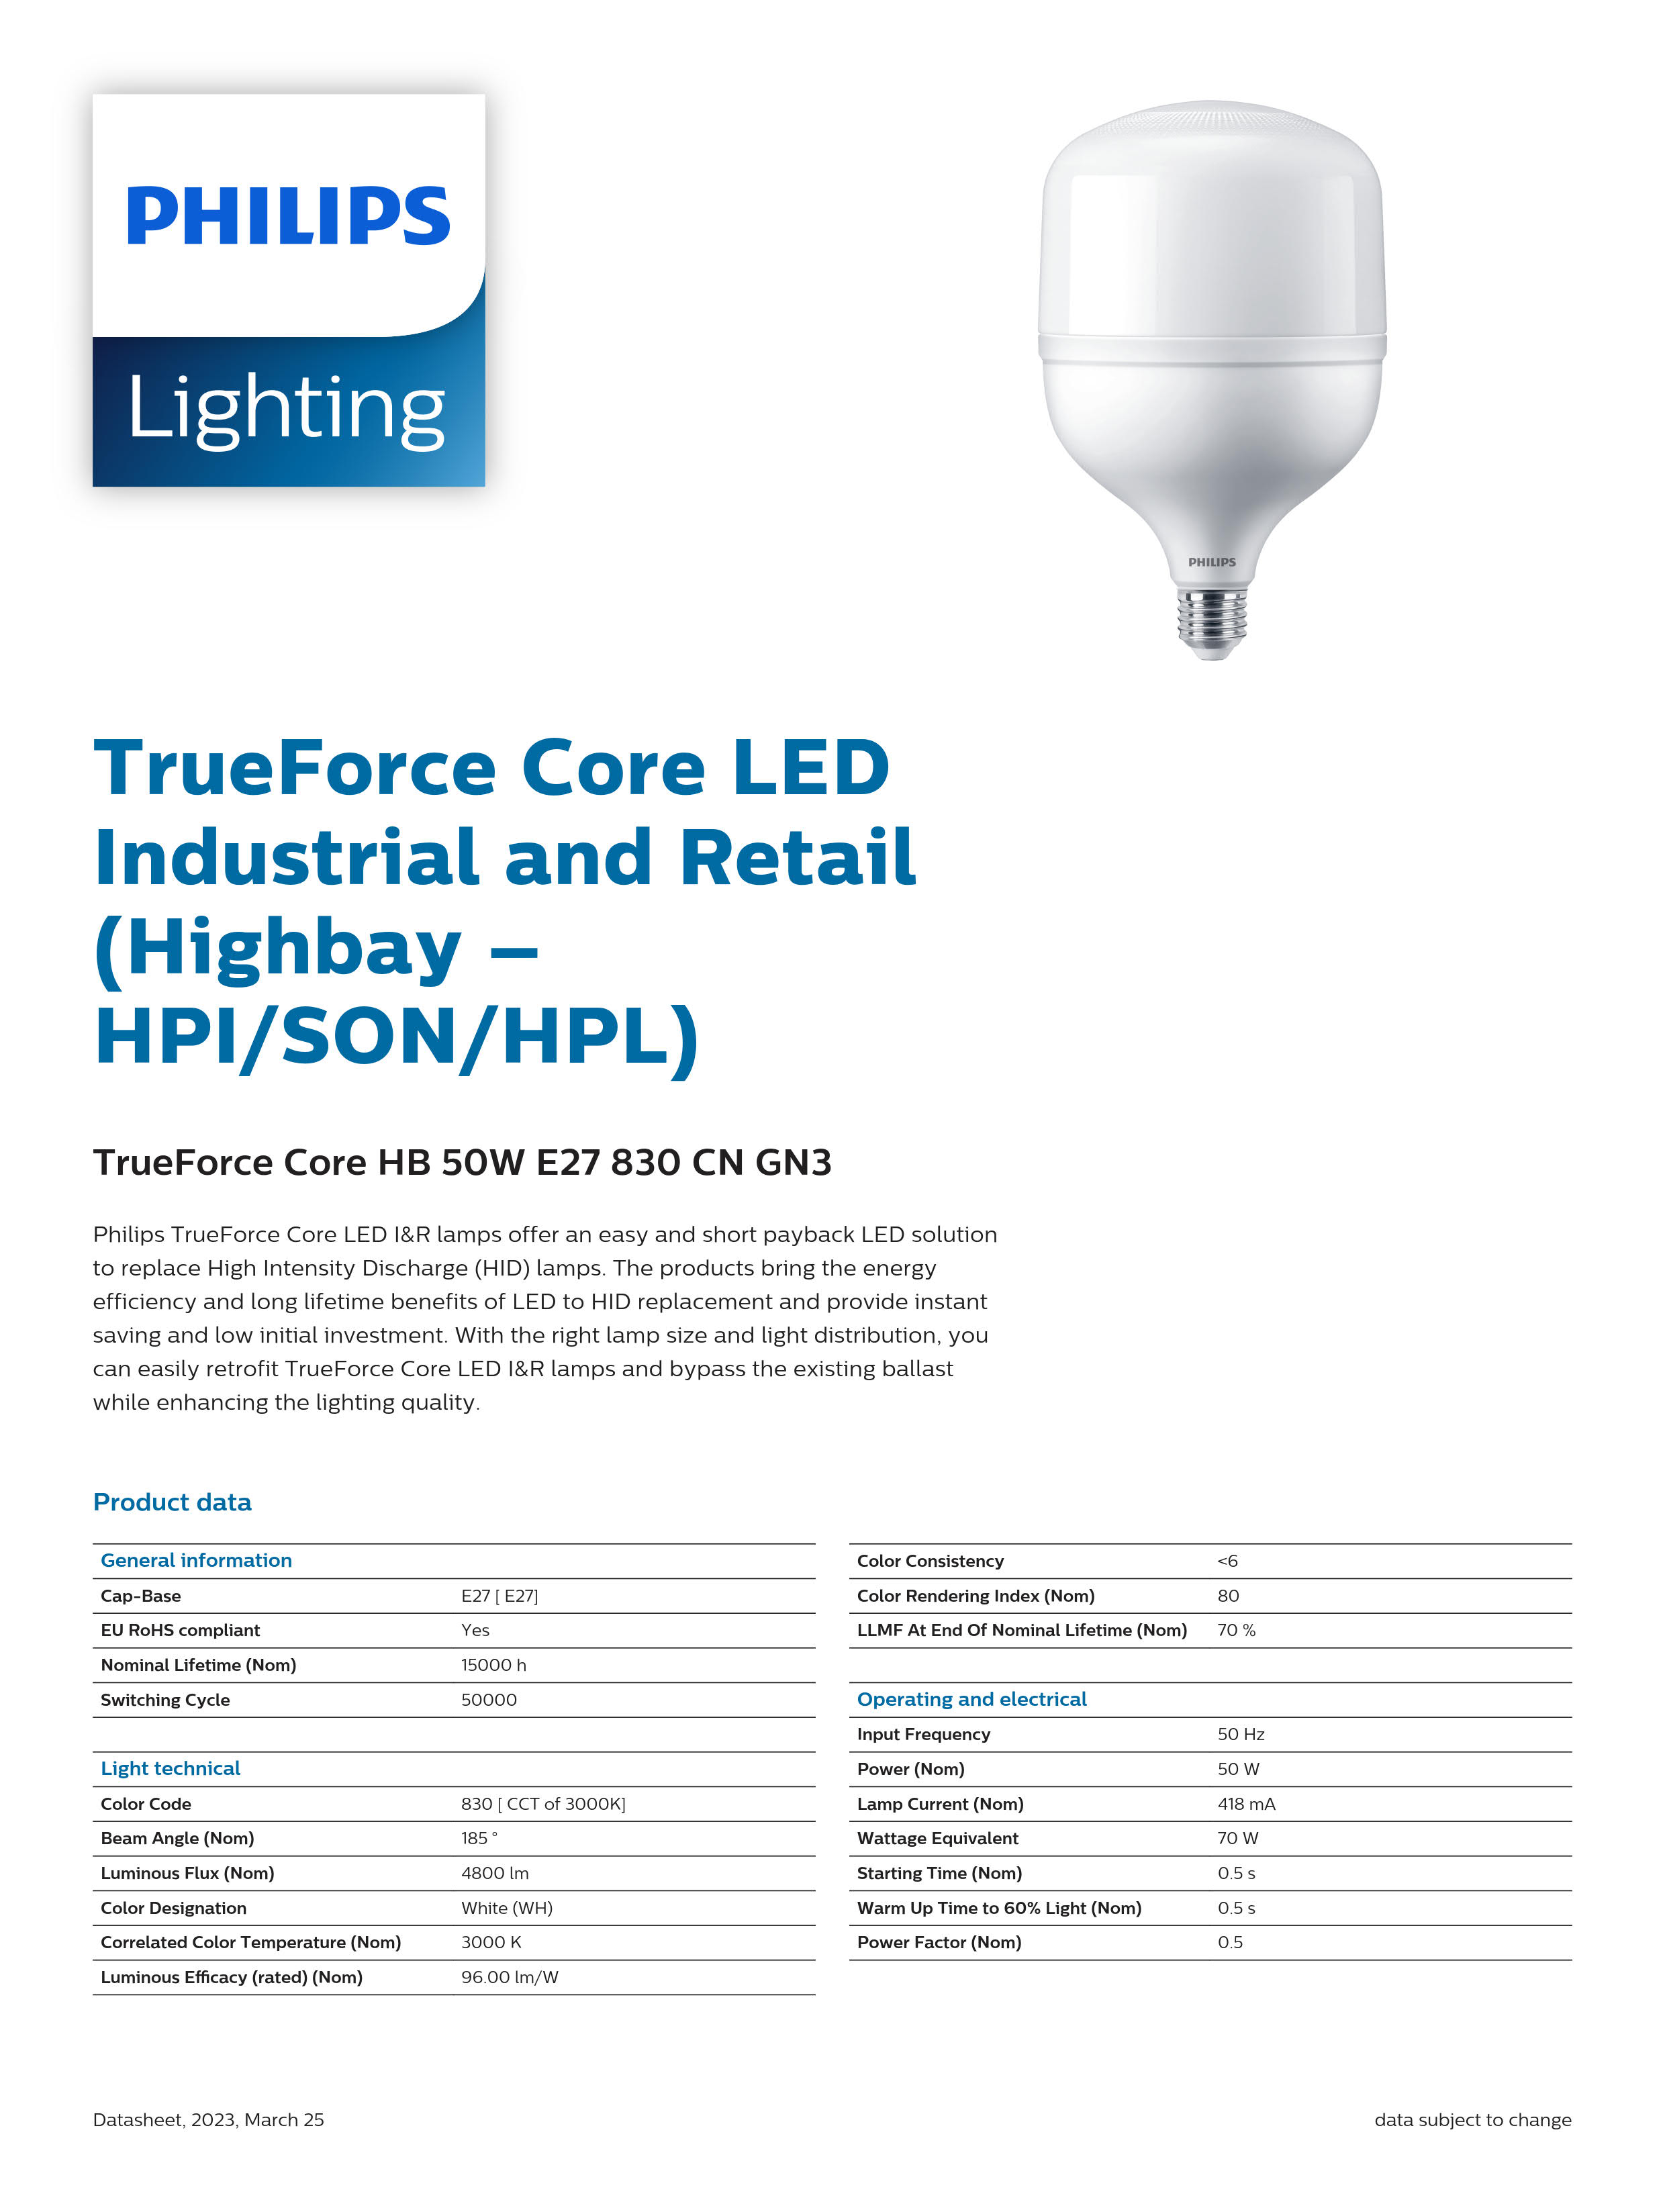 PHILIPS LED Bulb TrueForce Core HB 50W E27 840 CN GN3 929002410810